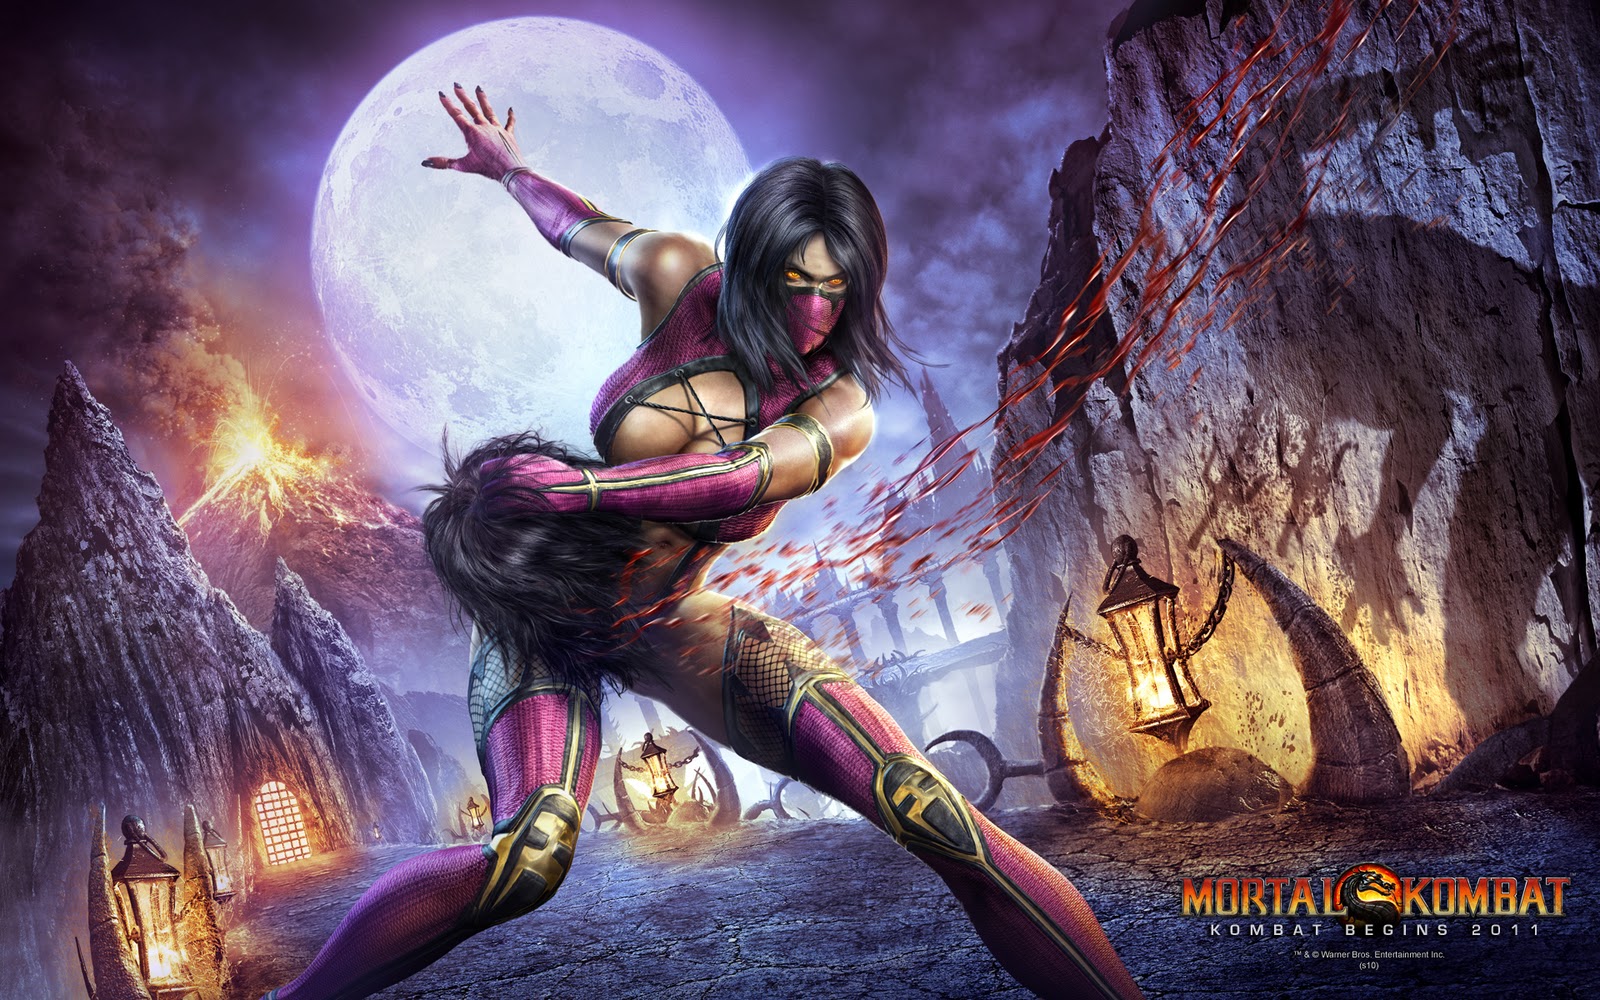 10 anos de Mortal Kombat 9: como o jogo trouxe a franquia para os esports?  - Millenium